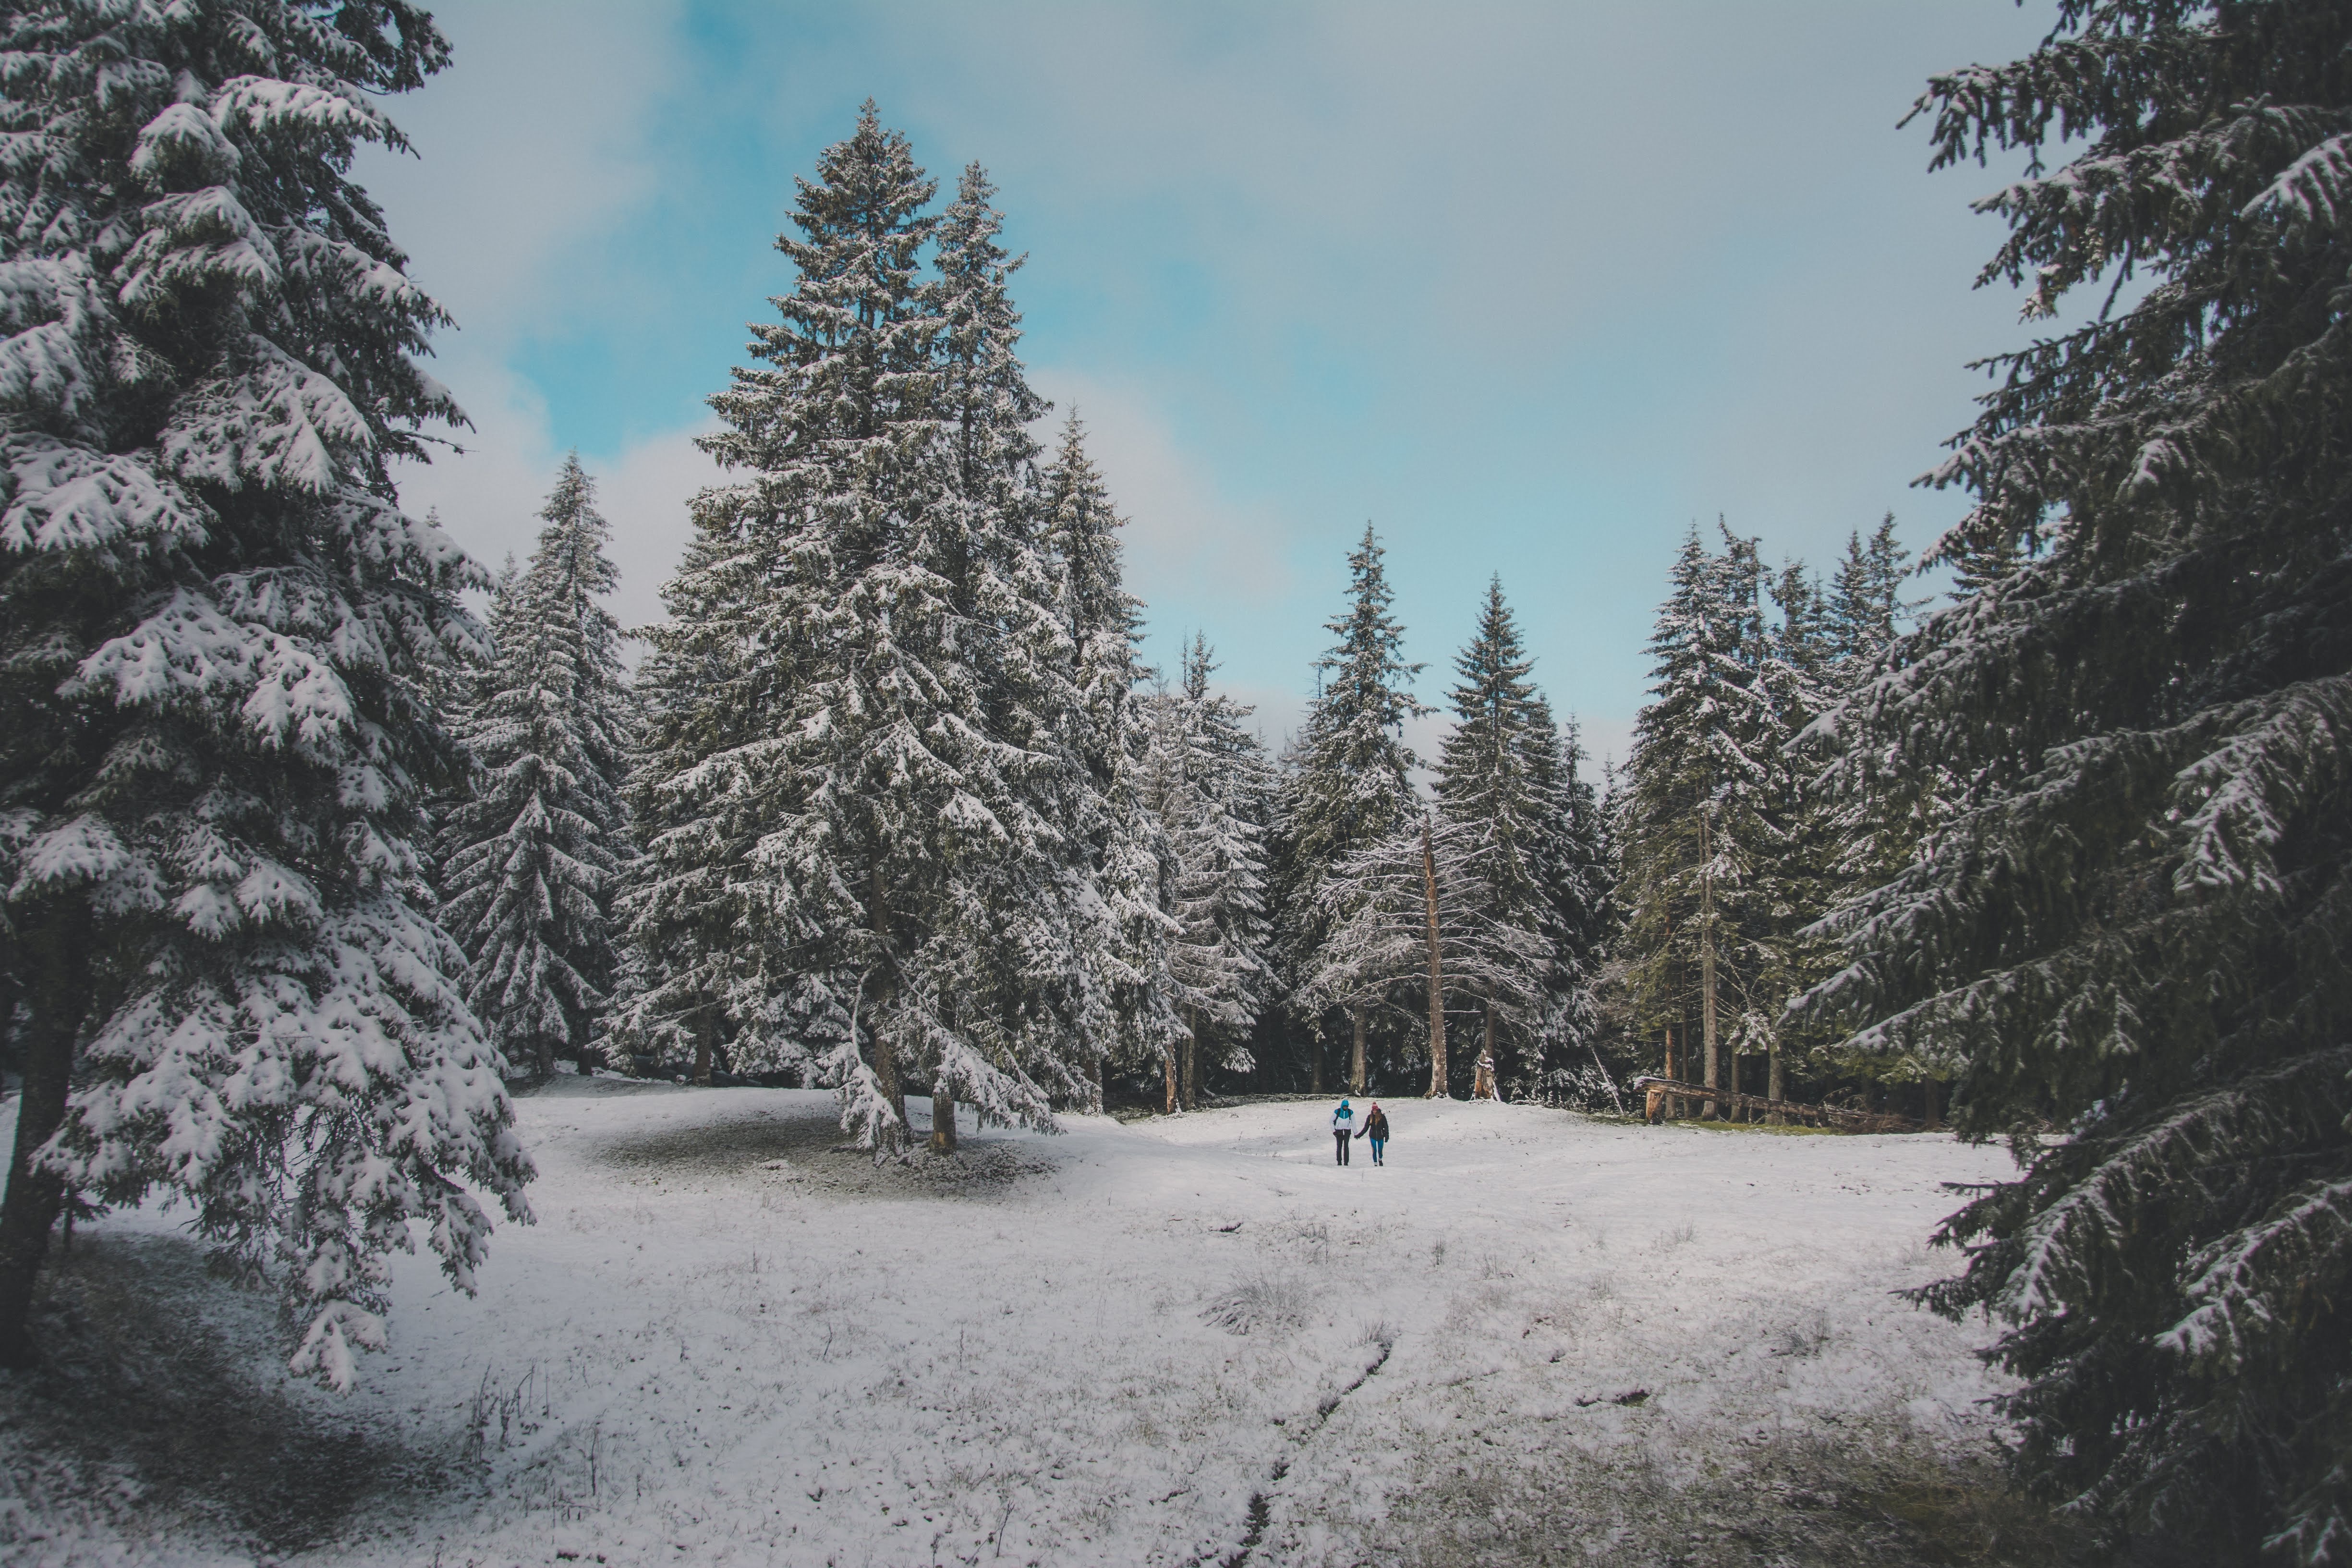 Скачать обои бесплатно Природа, Снег, Деревья, Лес, Зима, Люди картинка на рабочий стол ПК